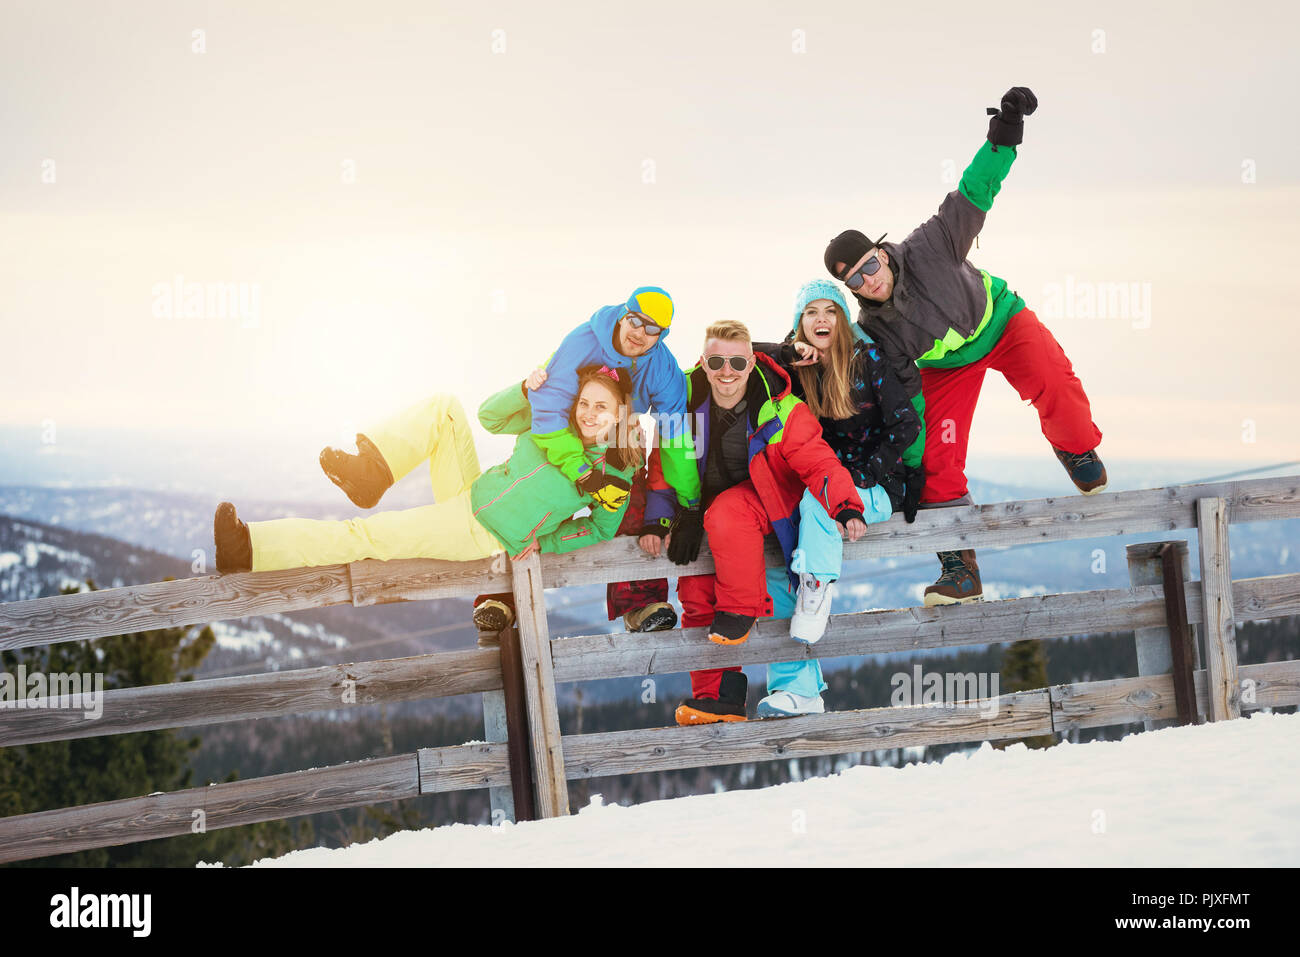 Groupe d'amis heureux s'amuse au ski contre les montagnes au coucher du soleil Banque D'Images